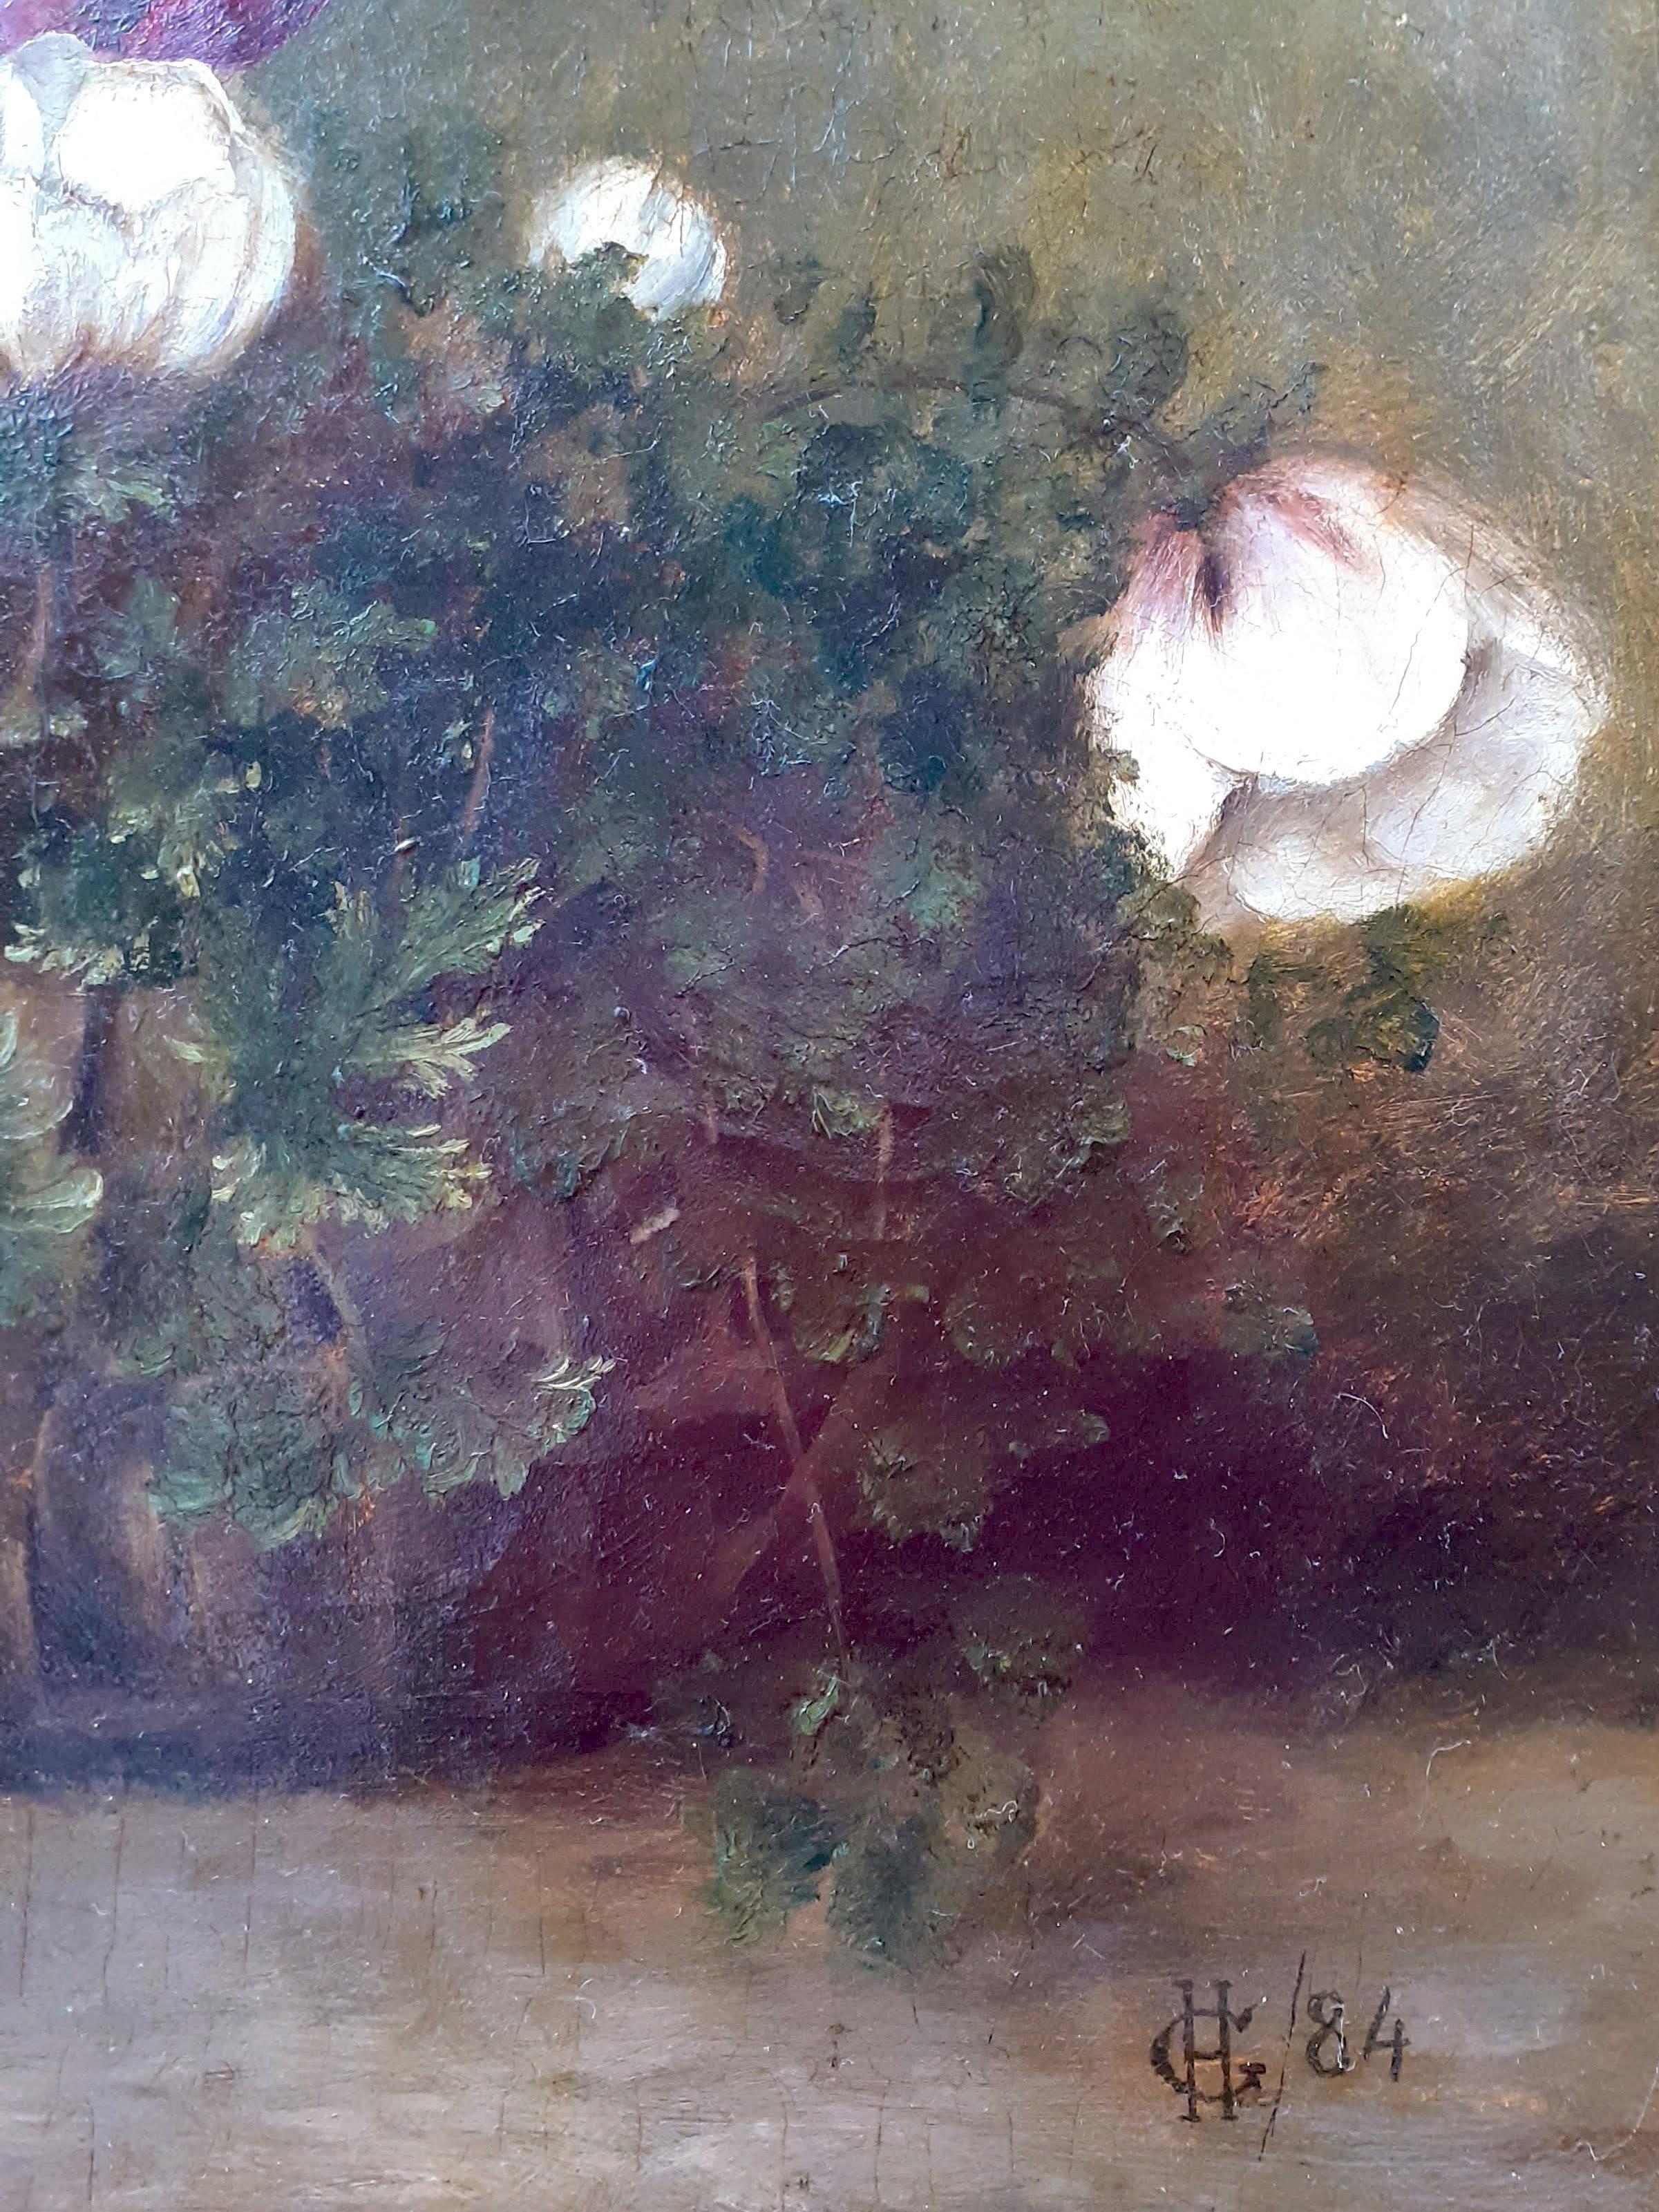 Ein charmantes Gemälde aus dem 19. Jahrhundert mit Anemonenblüten in einem Weidenkorb. Sie hat eine warme, saisonale und festliche Ausstrahlung. Ich liebe die große Einfachheit und Aufrichtigkeit, die sie ausstrahlt. Unser Öl auf Leinwand ist